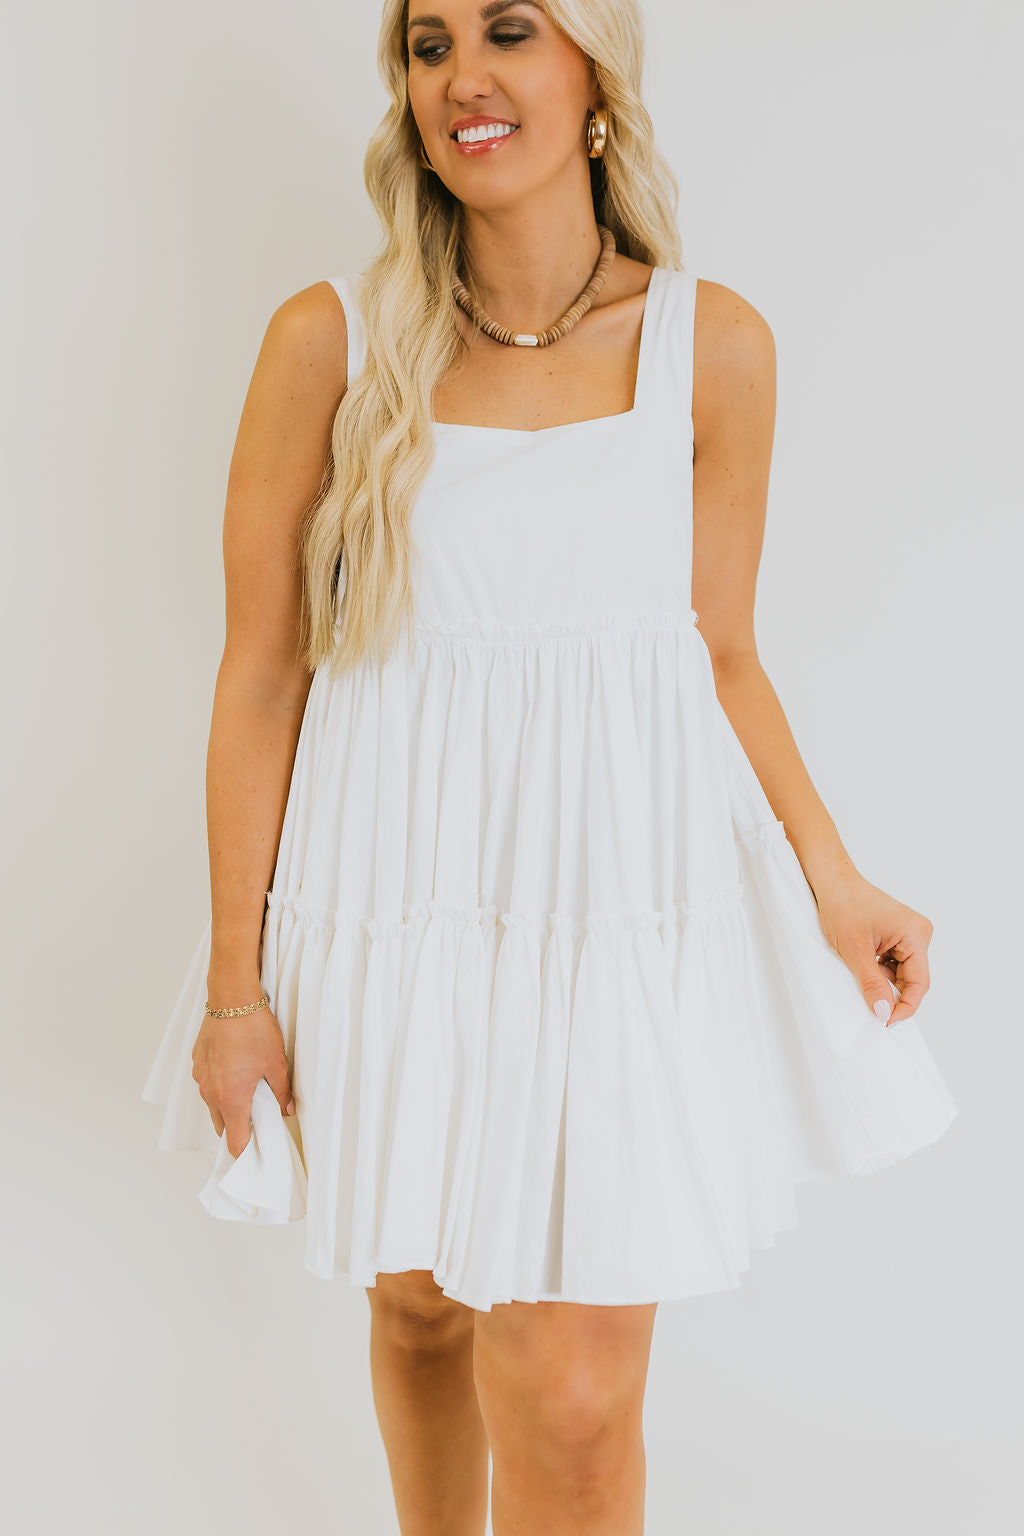 Southern Belle Dress - White